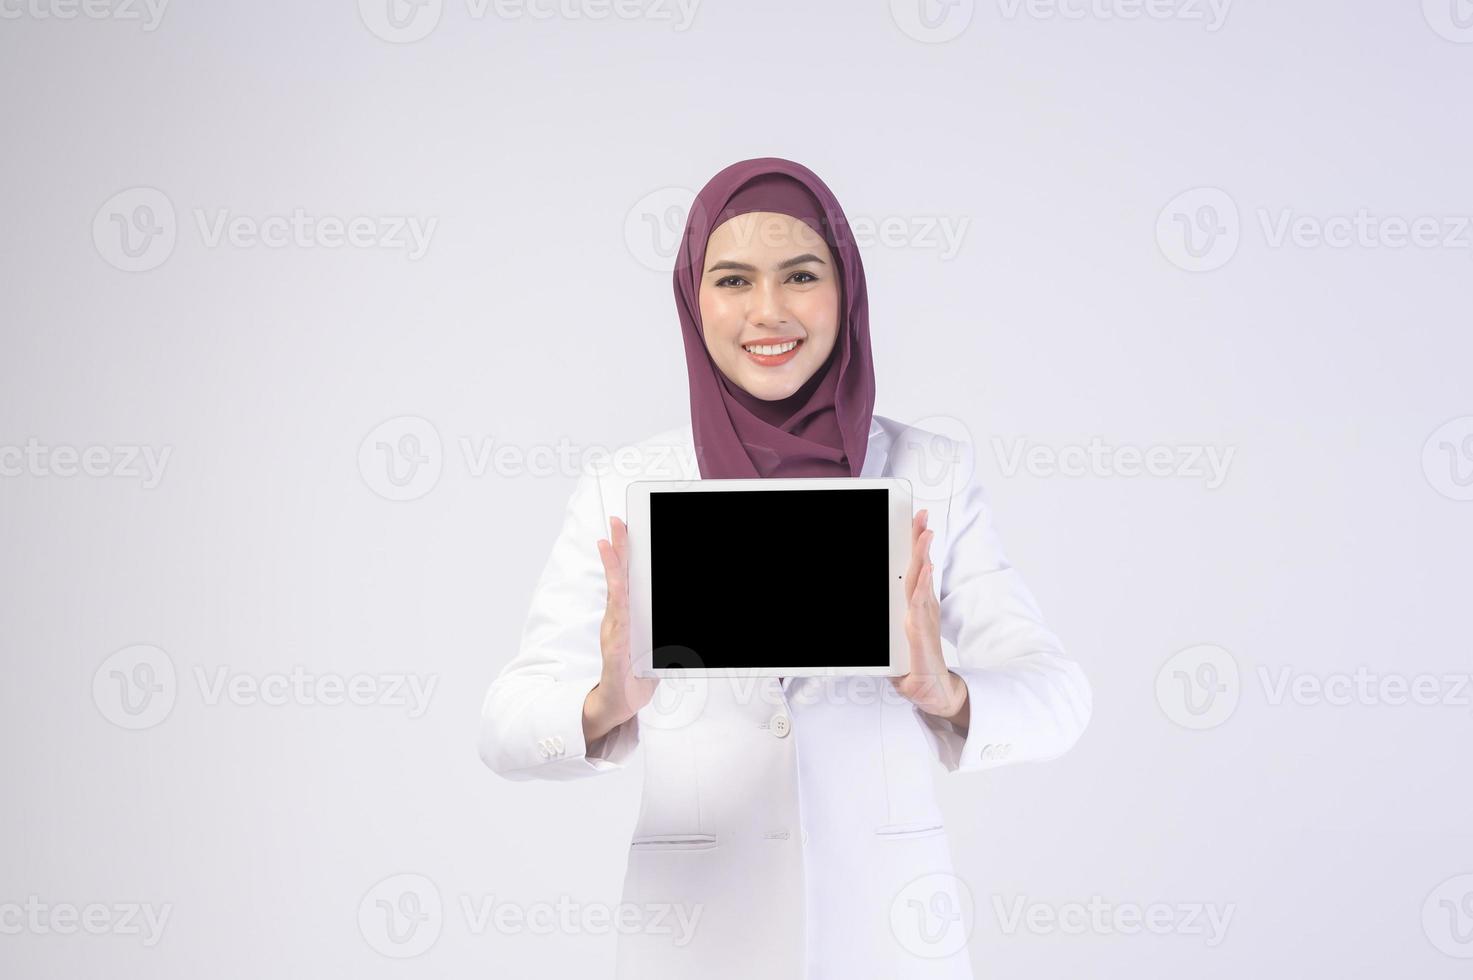 belle femme d'affaires musulmane portant un costume blanc avec hijab tenant une tablette en studio photo